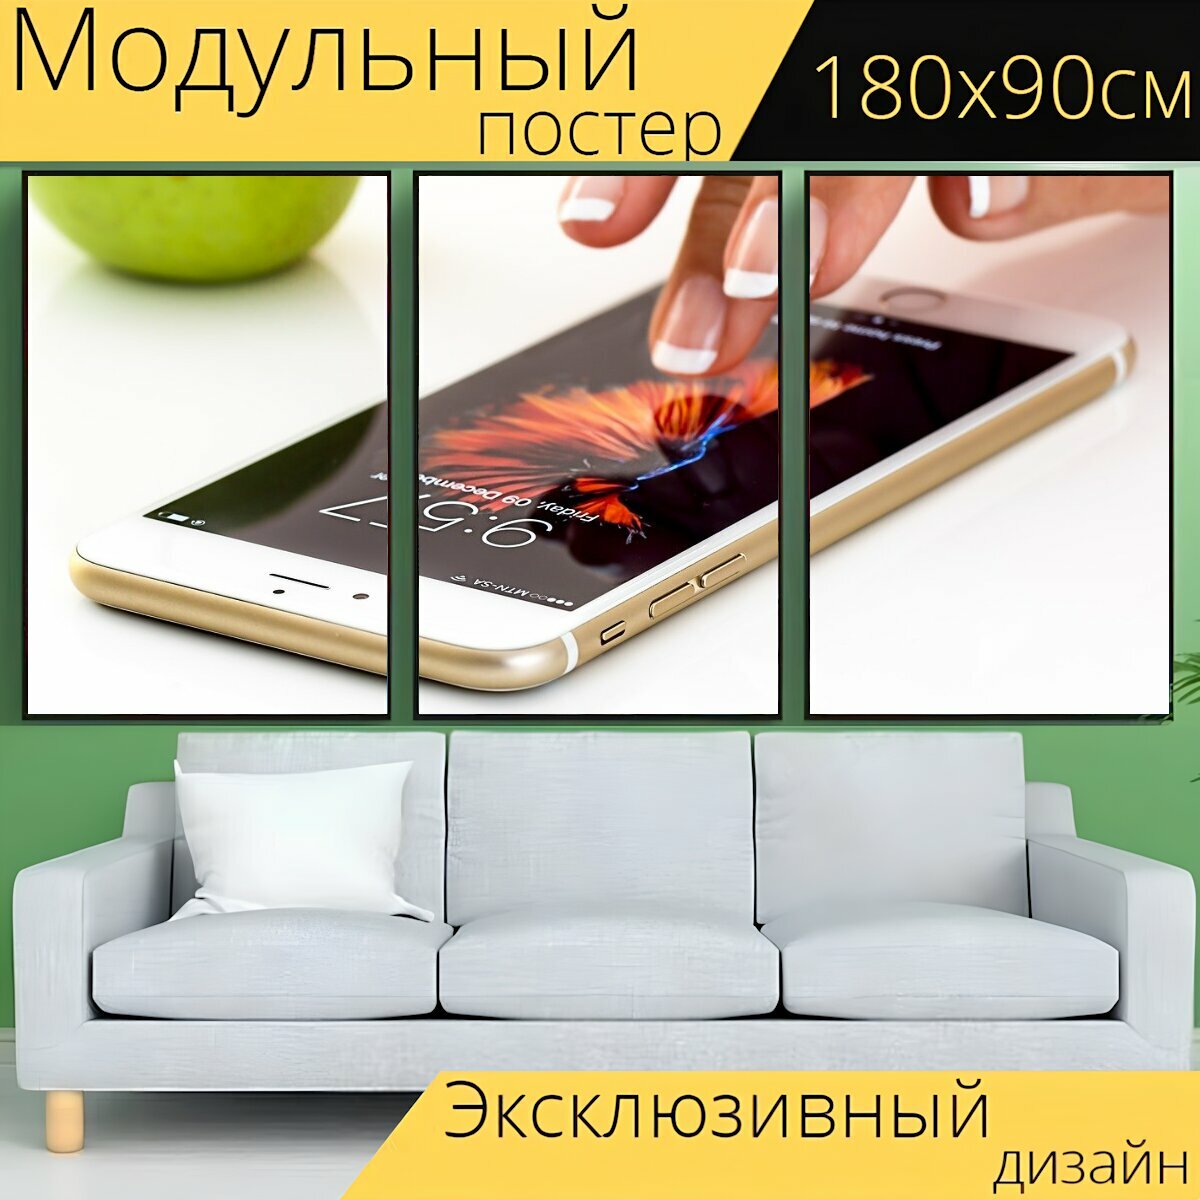 Модульный постер "Смартфон, мобильный телефон, сенсорный экран" 180 x 90 см. для интерьера